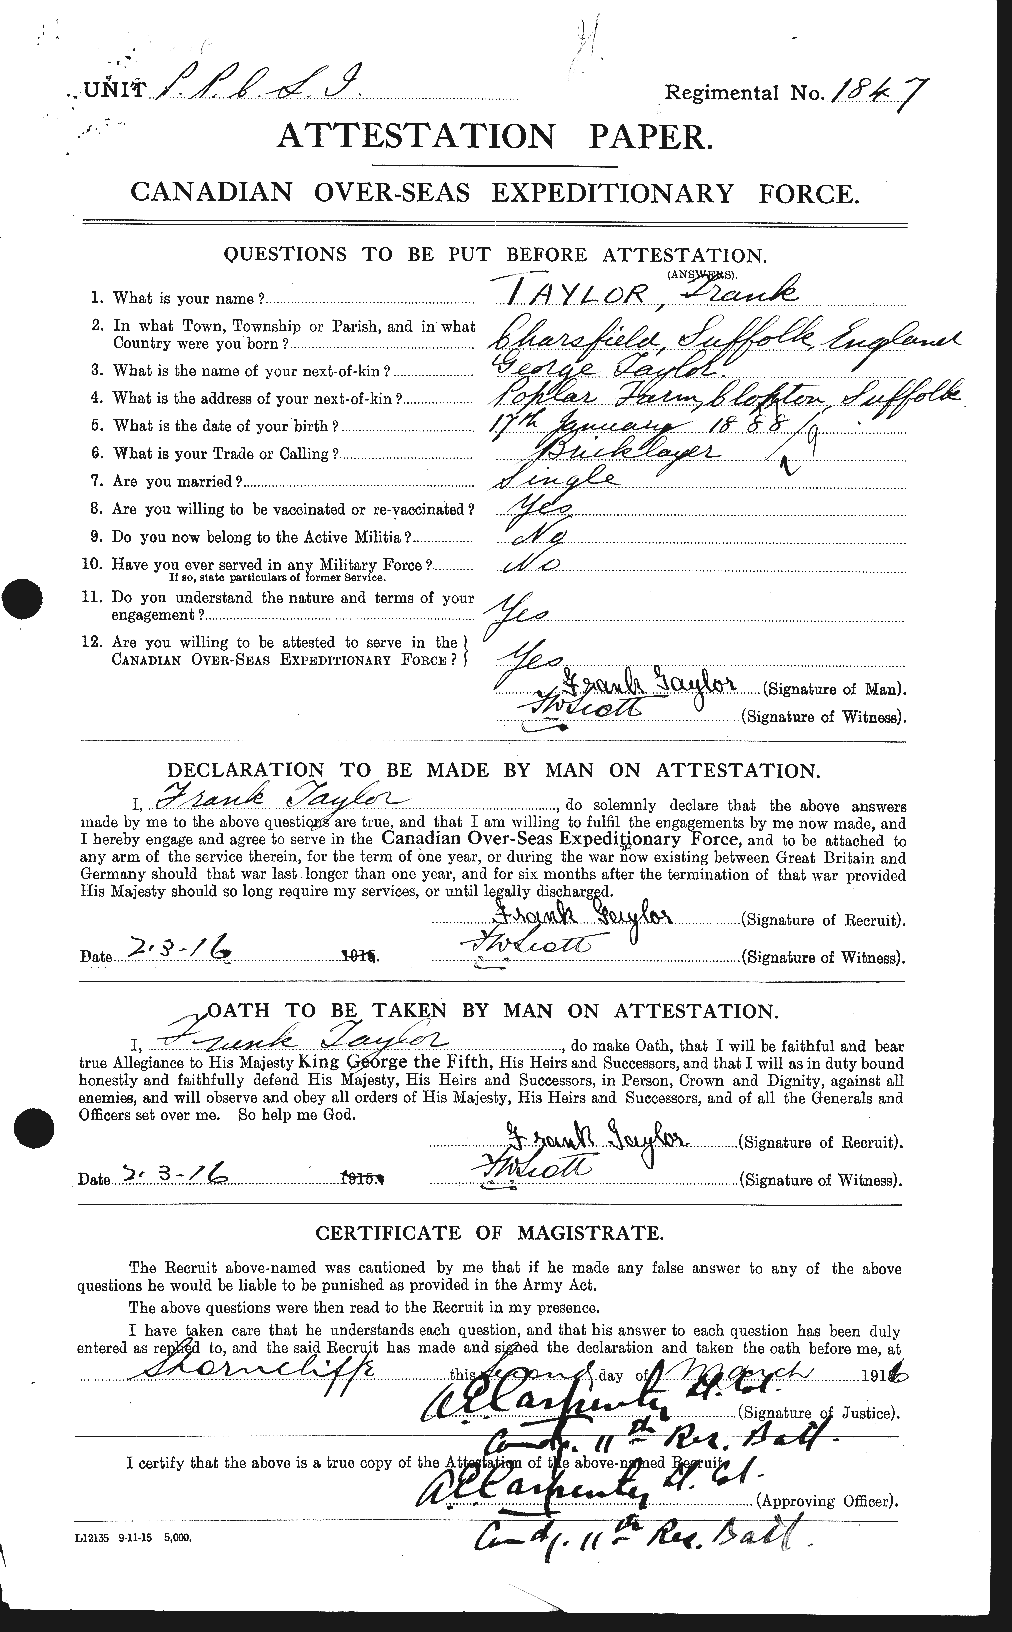 Dossiers du Personnel de la Première Guerre mondiale - CEC 625706a